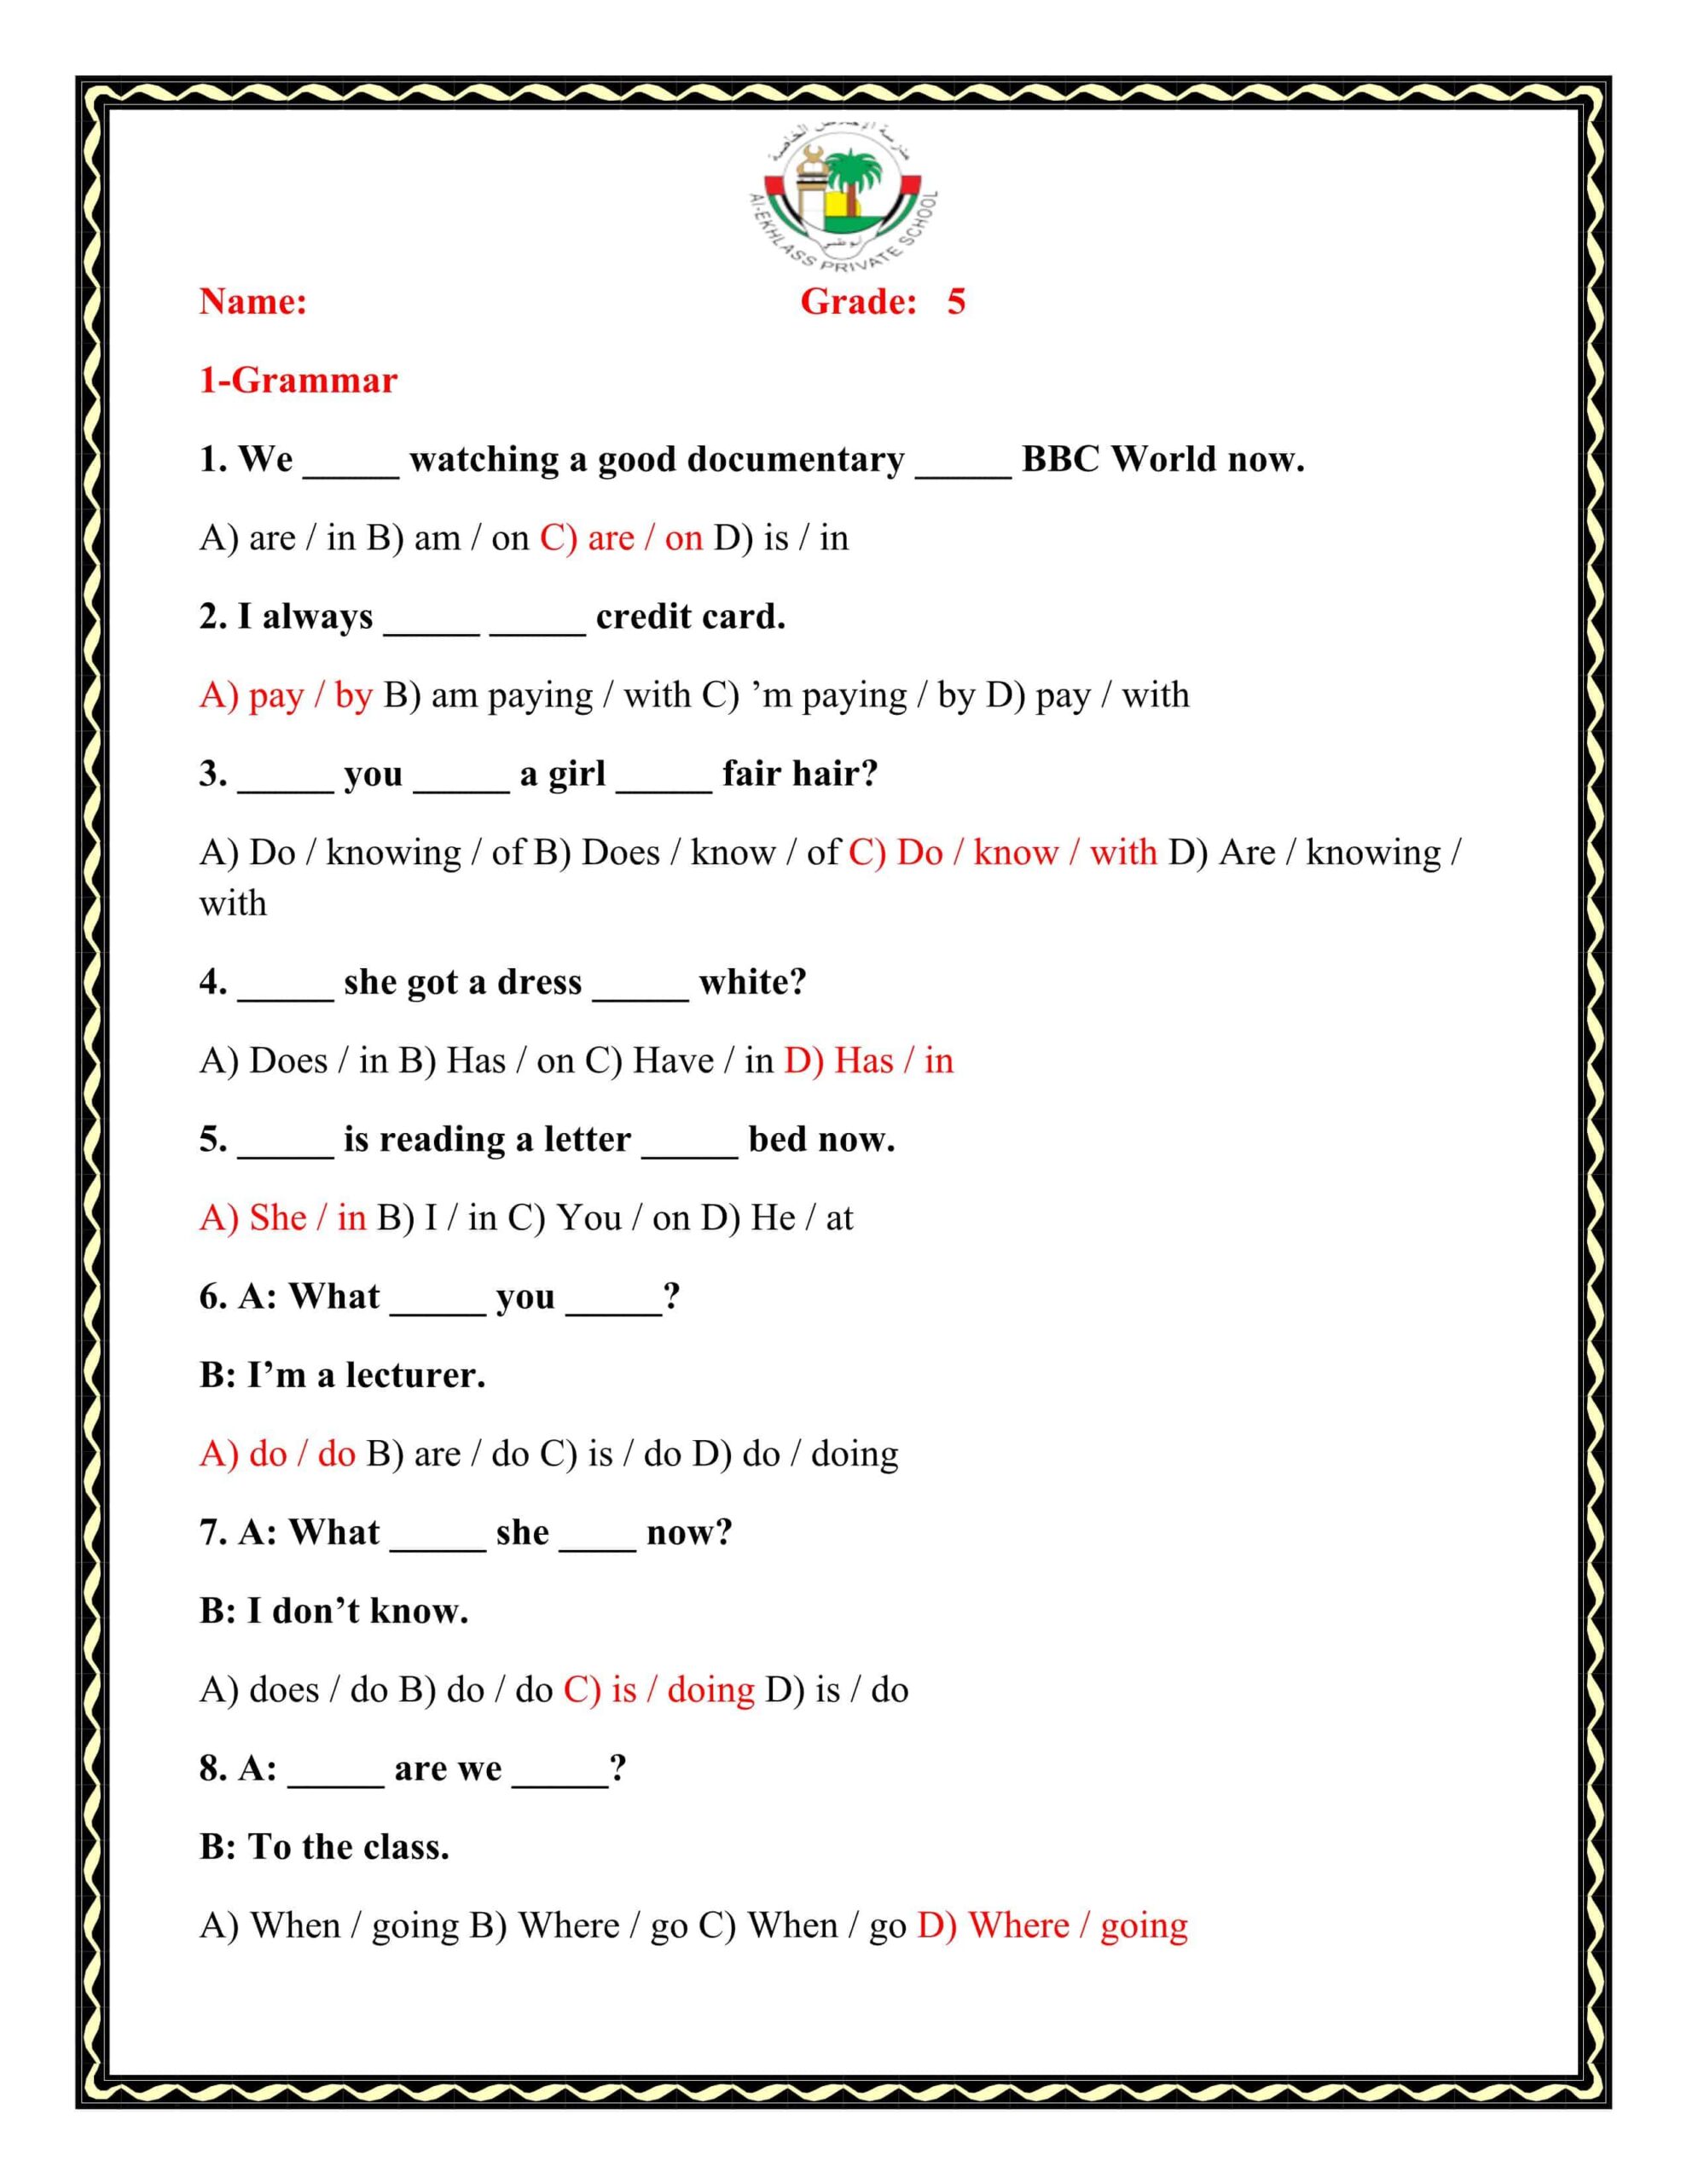 حل أوراق عمل Grammar اللغة الإنجليزية الصف الخامس